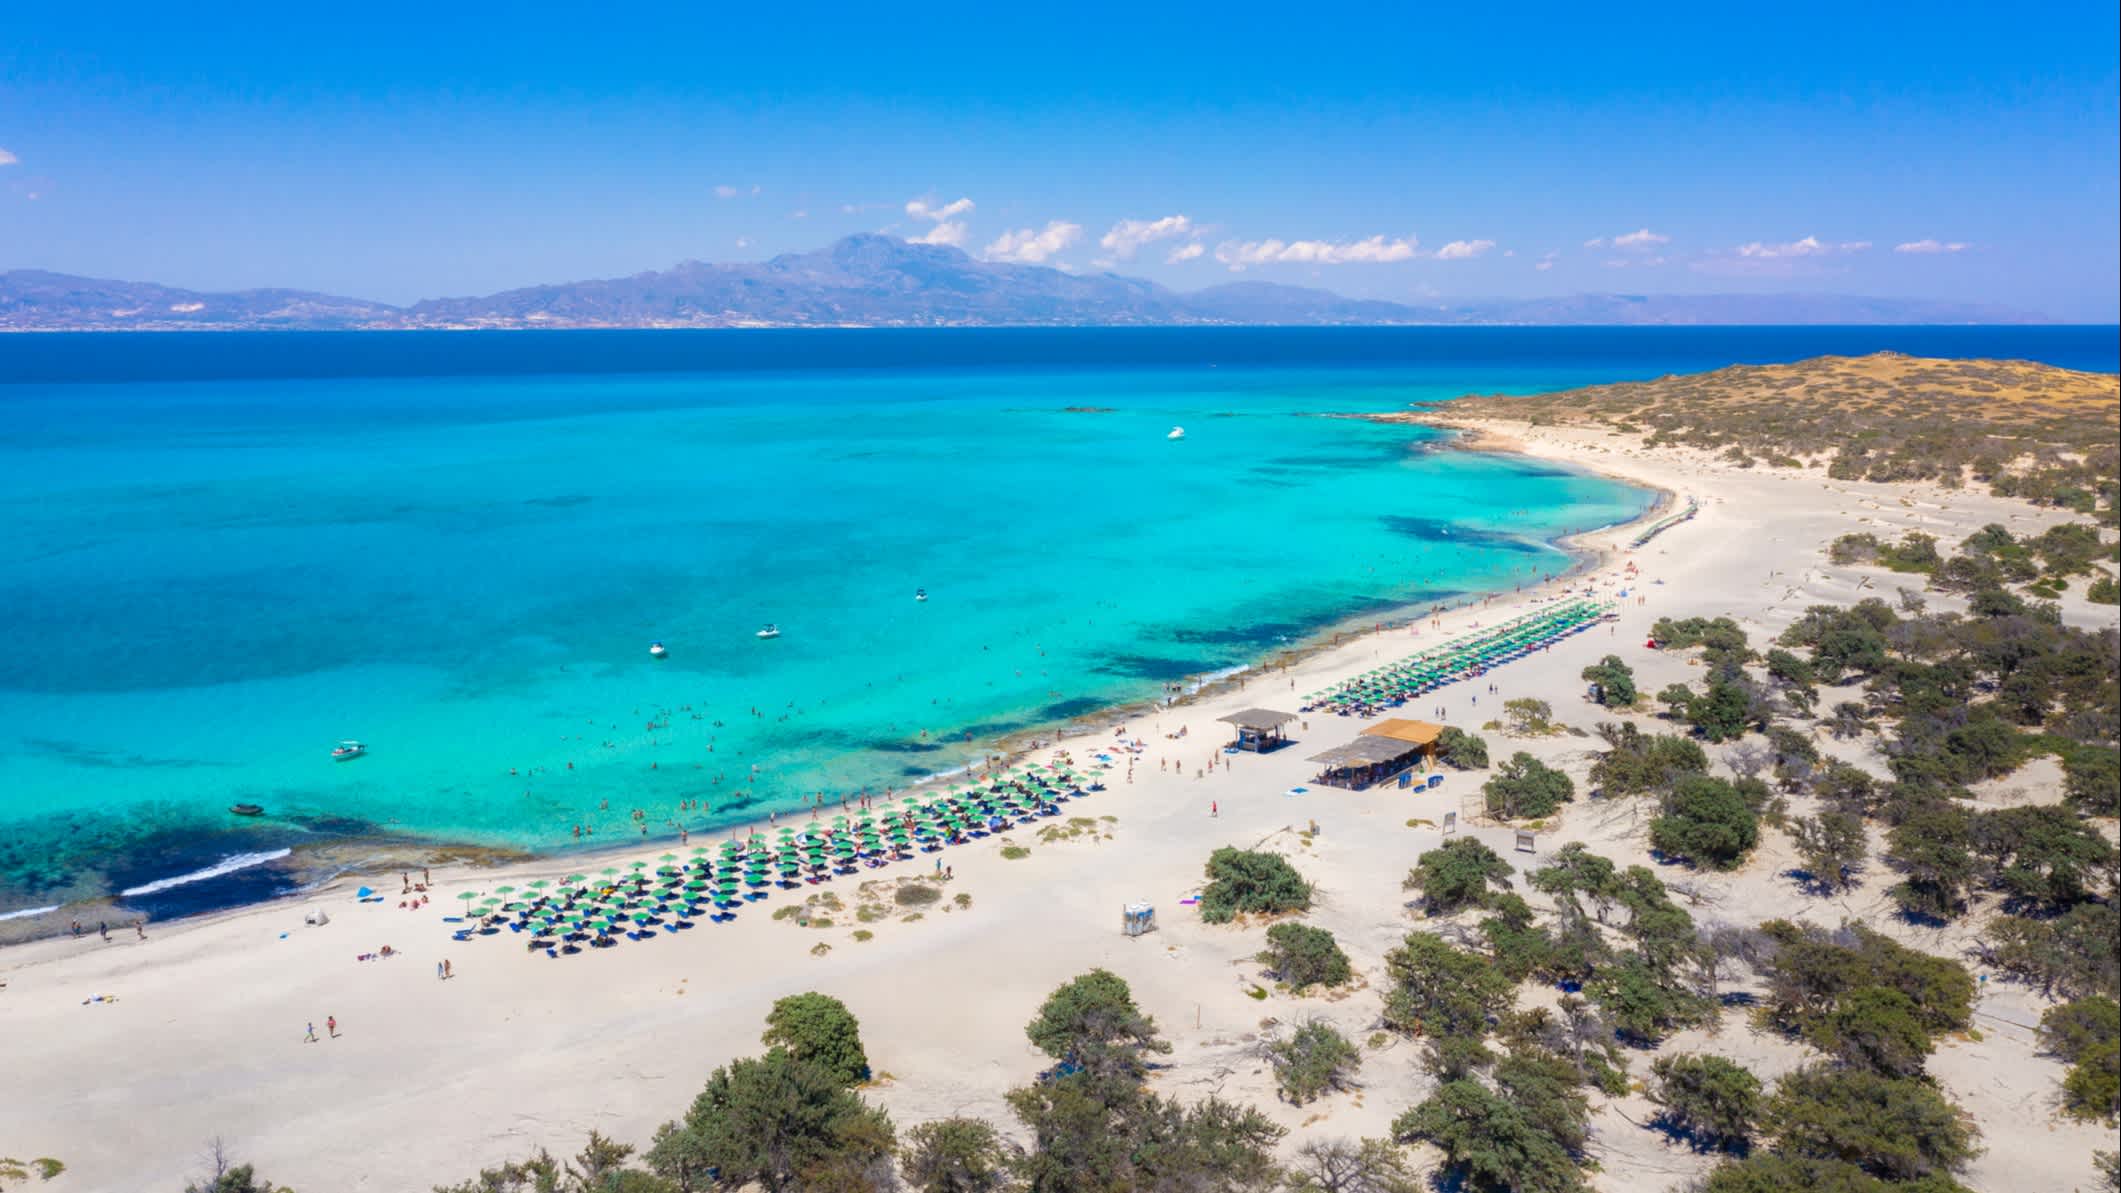 Vue aérienne d'une plage de sable blanc à Chryssi au sud de la Crète, en Grèce.

